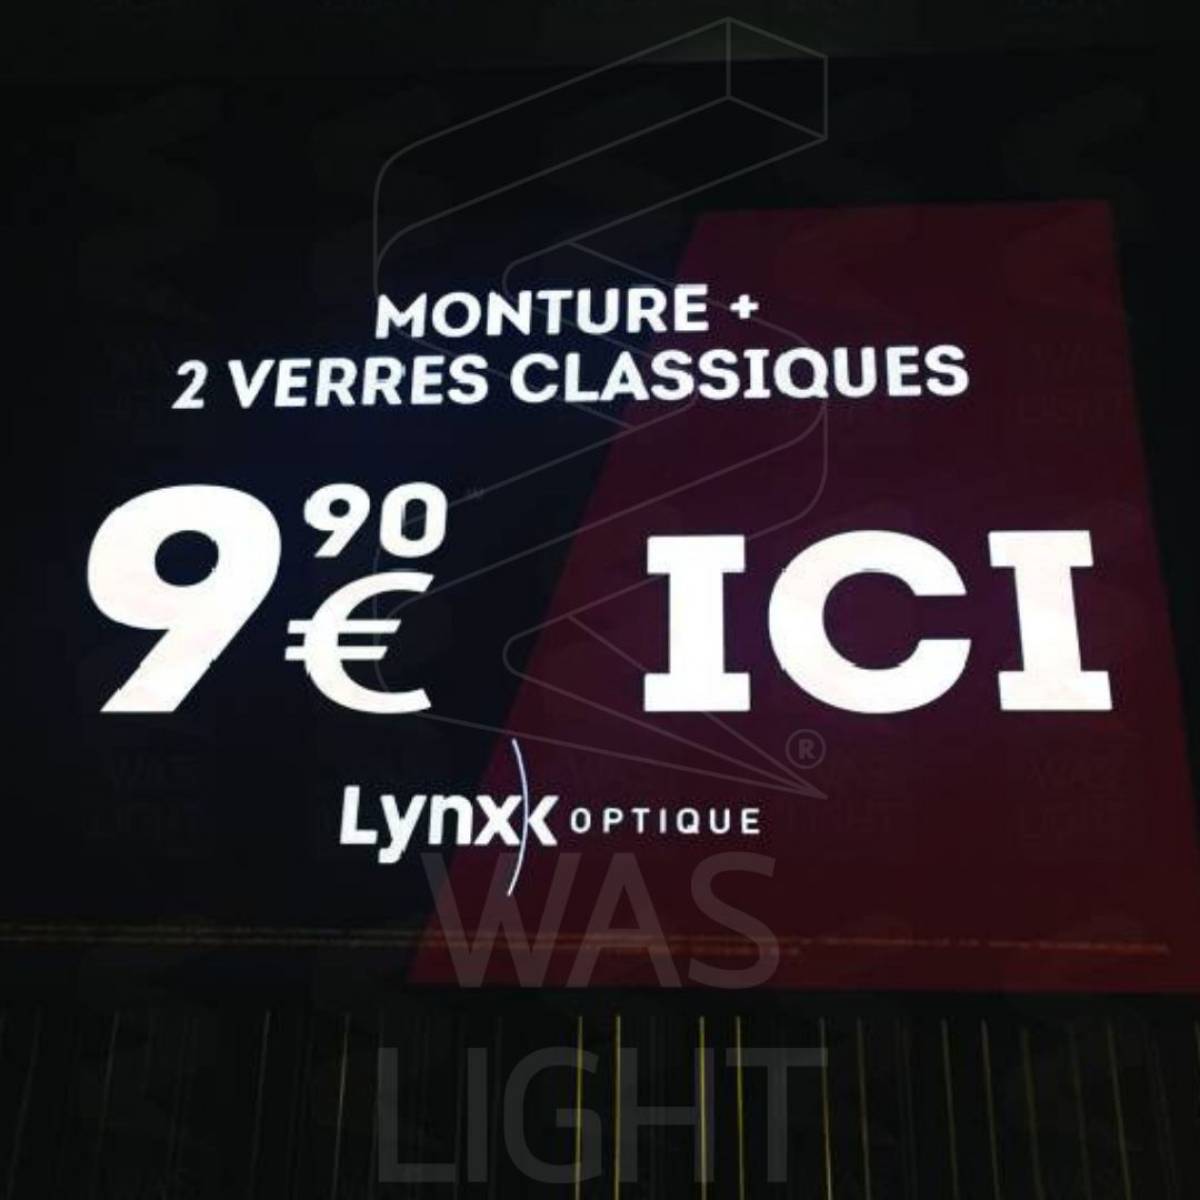 Signalétique électroluminescente pour l'opticien Lynx Optique en Isère